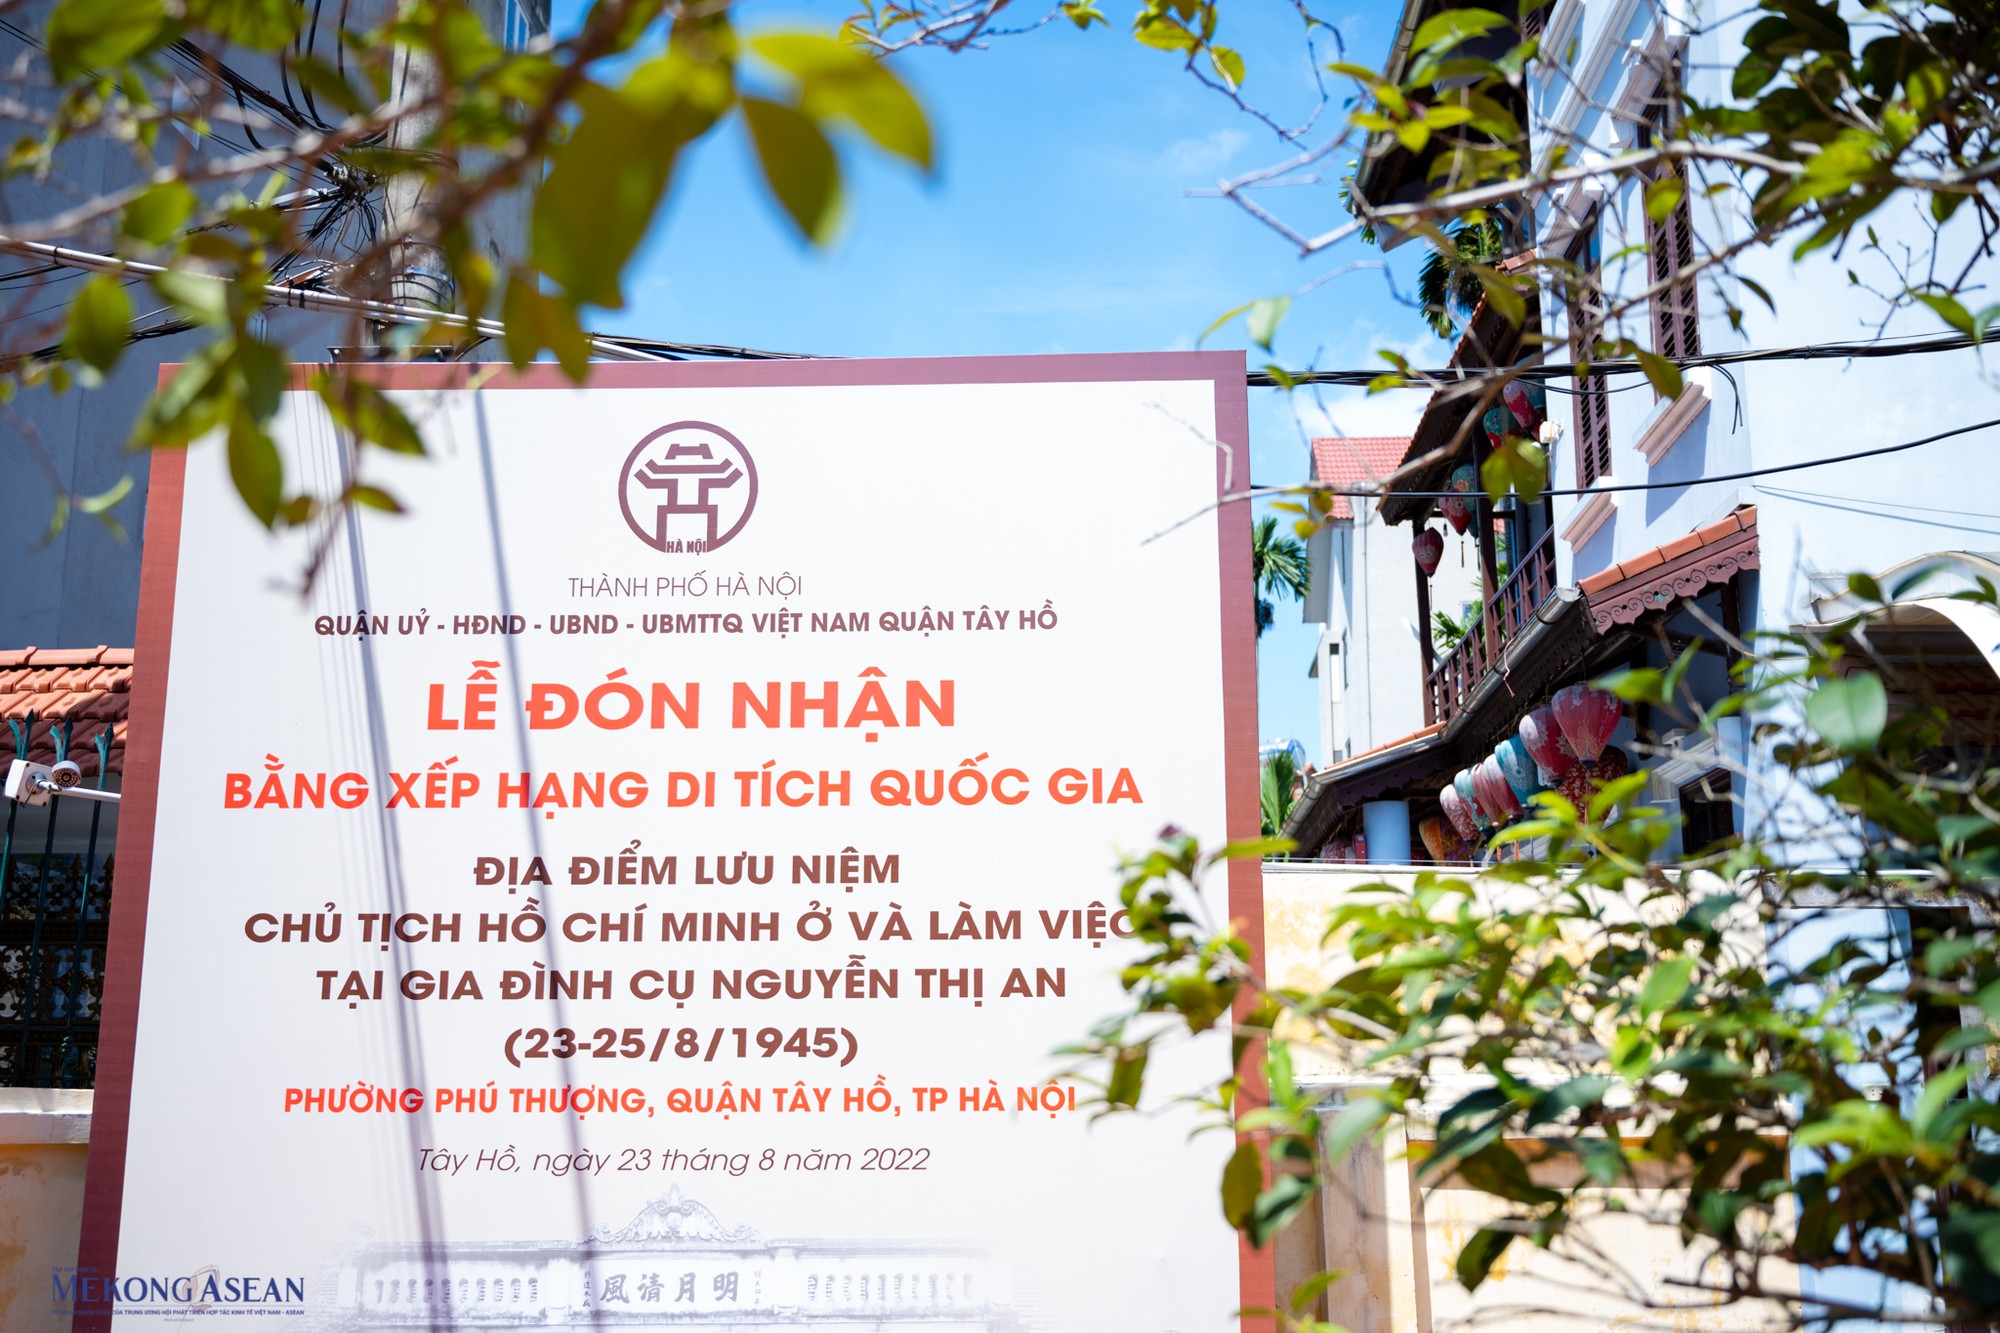 Ngày 23/8/2022, ngôi nhà lịch sử ở quận Tây Hồ, Hà Nội này đã được công nhận Di tích Quốc Gia, trở thành một điểm ghé thăm cho những ai muốn tìm hiểu về Bác Hồ và những ngày tháng lịch sử năm 1945, đánh dấu sự khai sinh ra nước Việt Nam hiện đại.